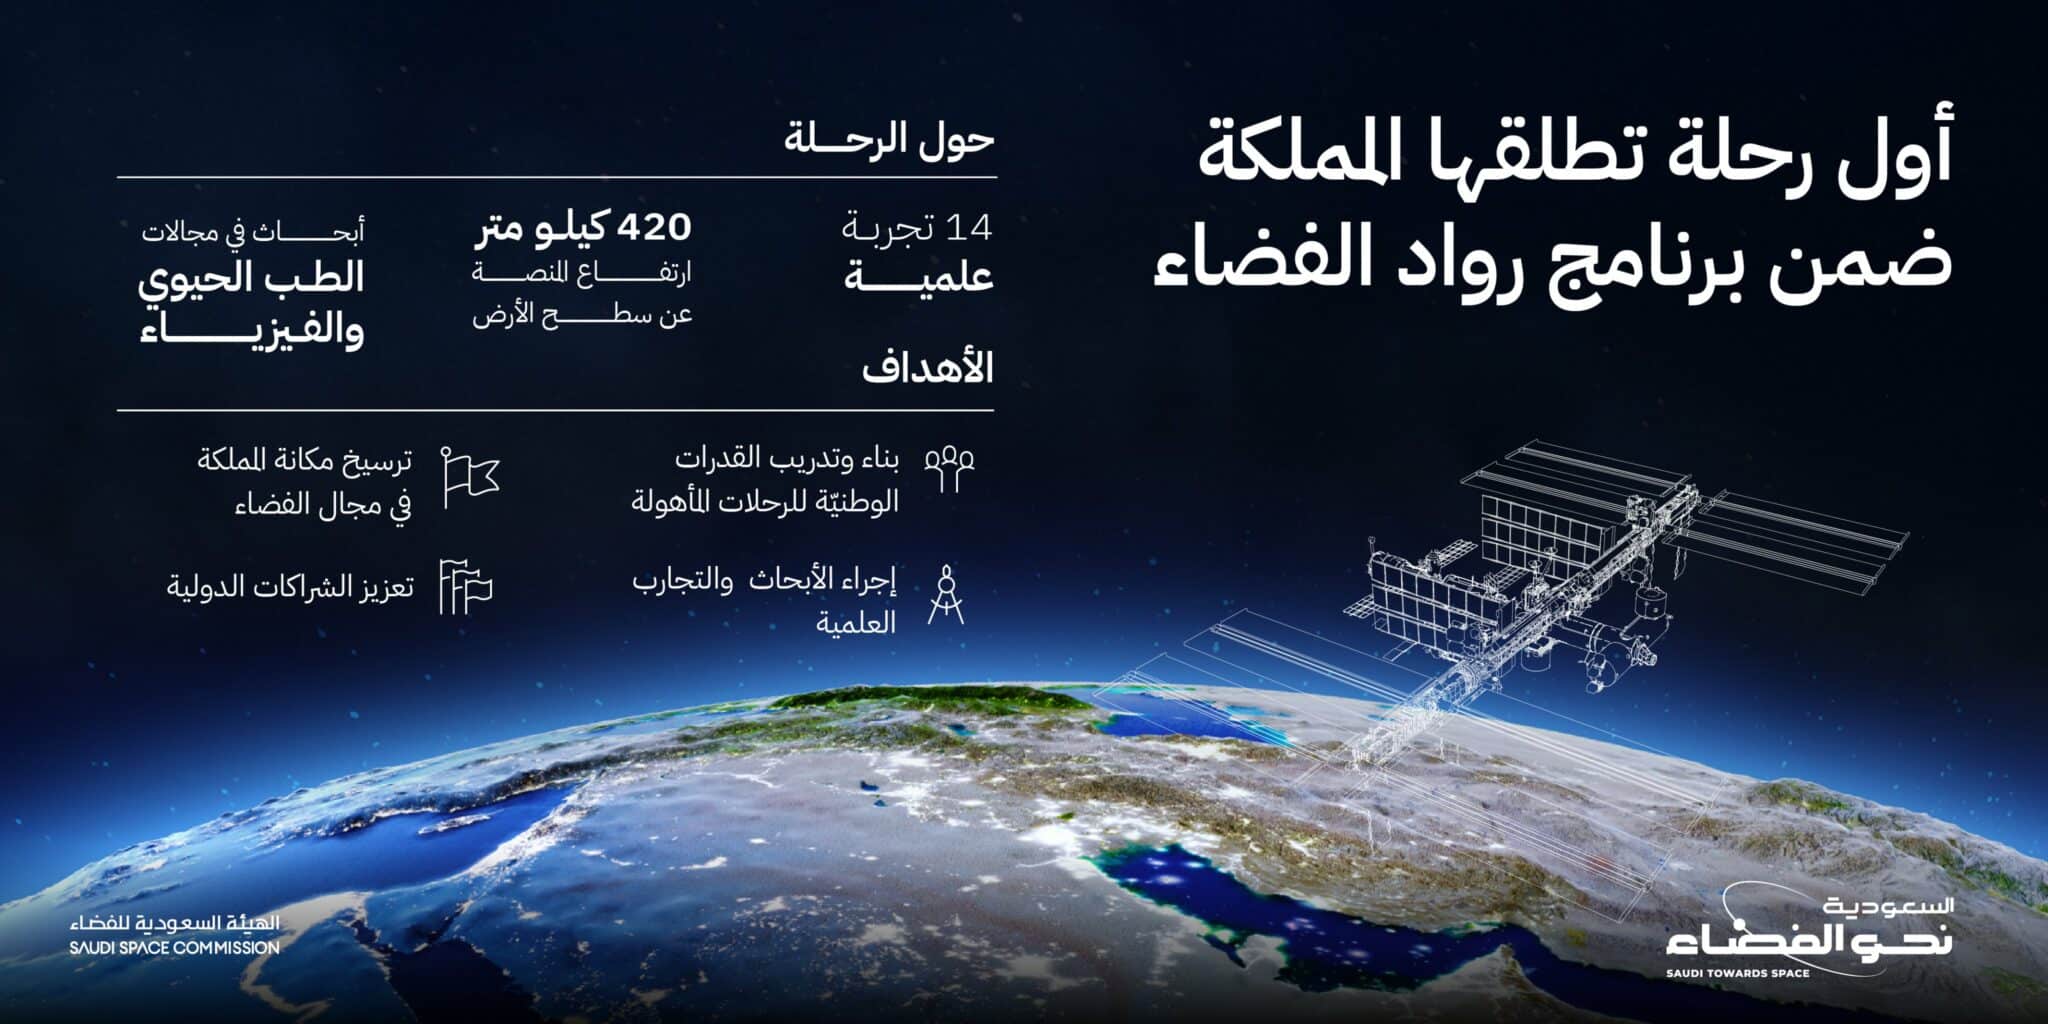 السعودية تدخل مجال أبحاث الفضاء لخدمة البشرية والعلم